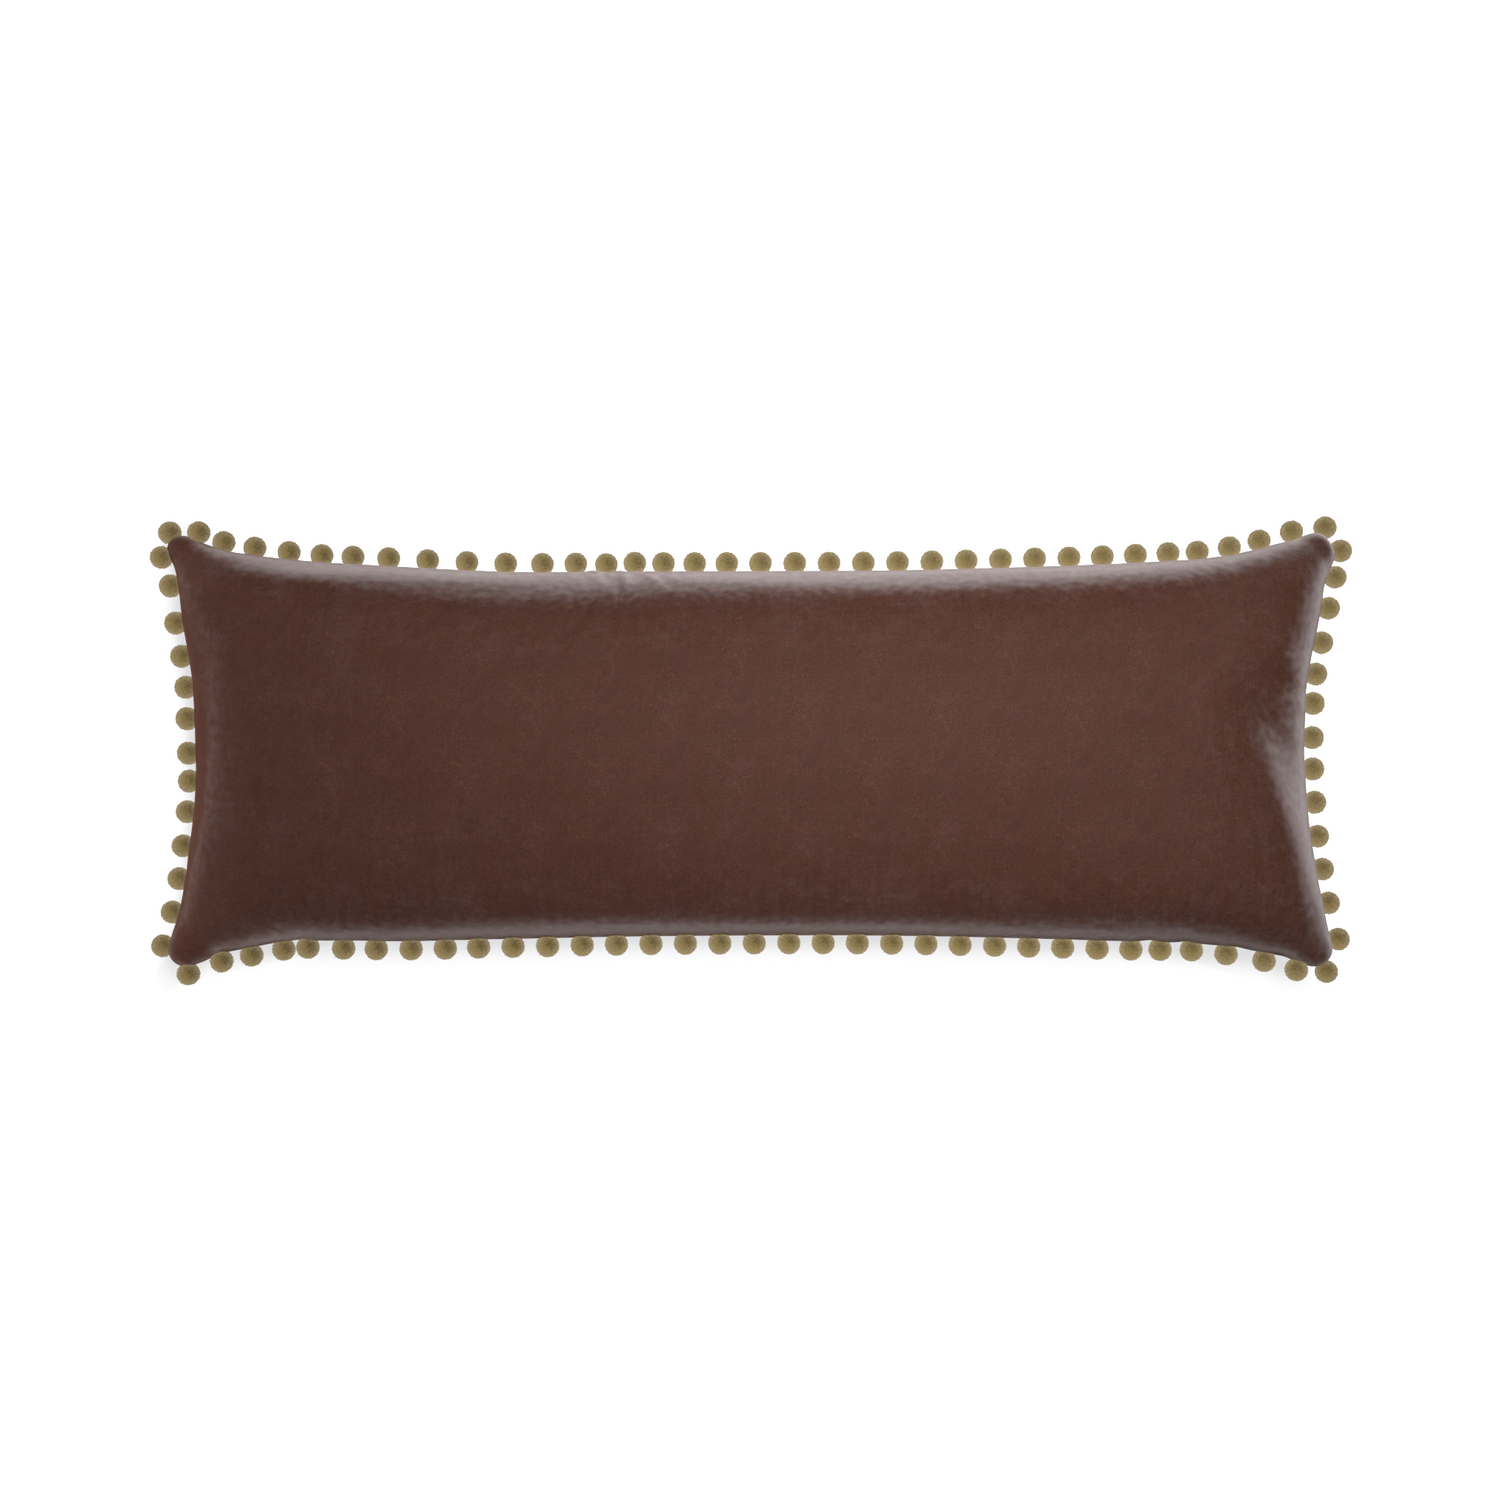 rectangle brown velvet pillow with olive green pom poms